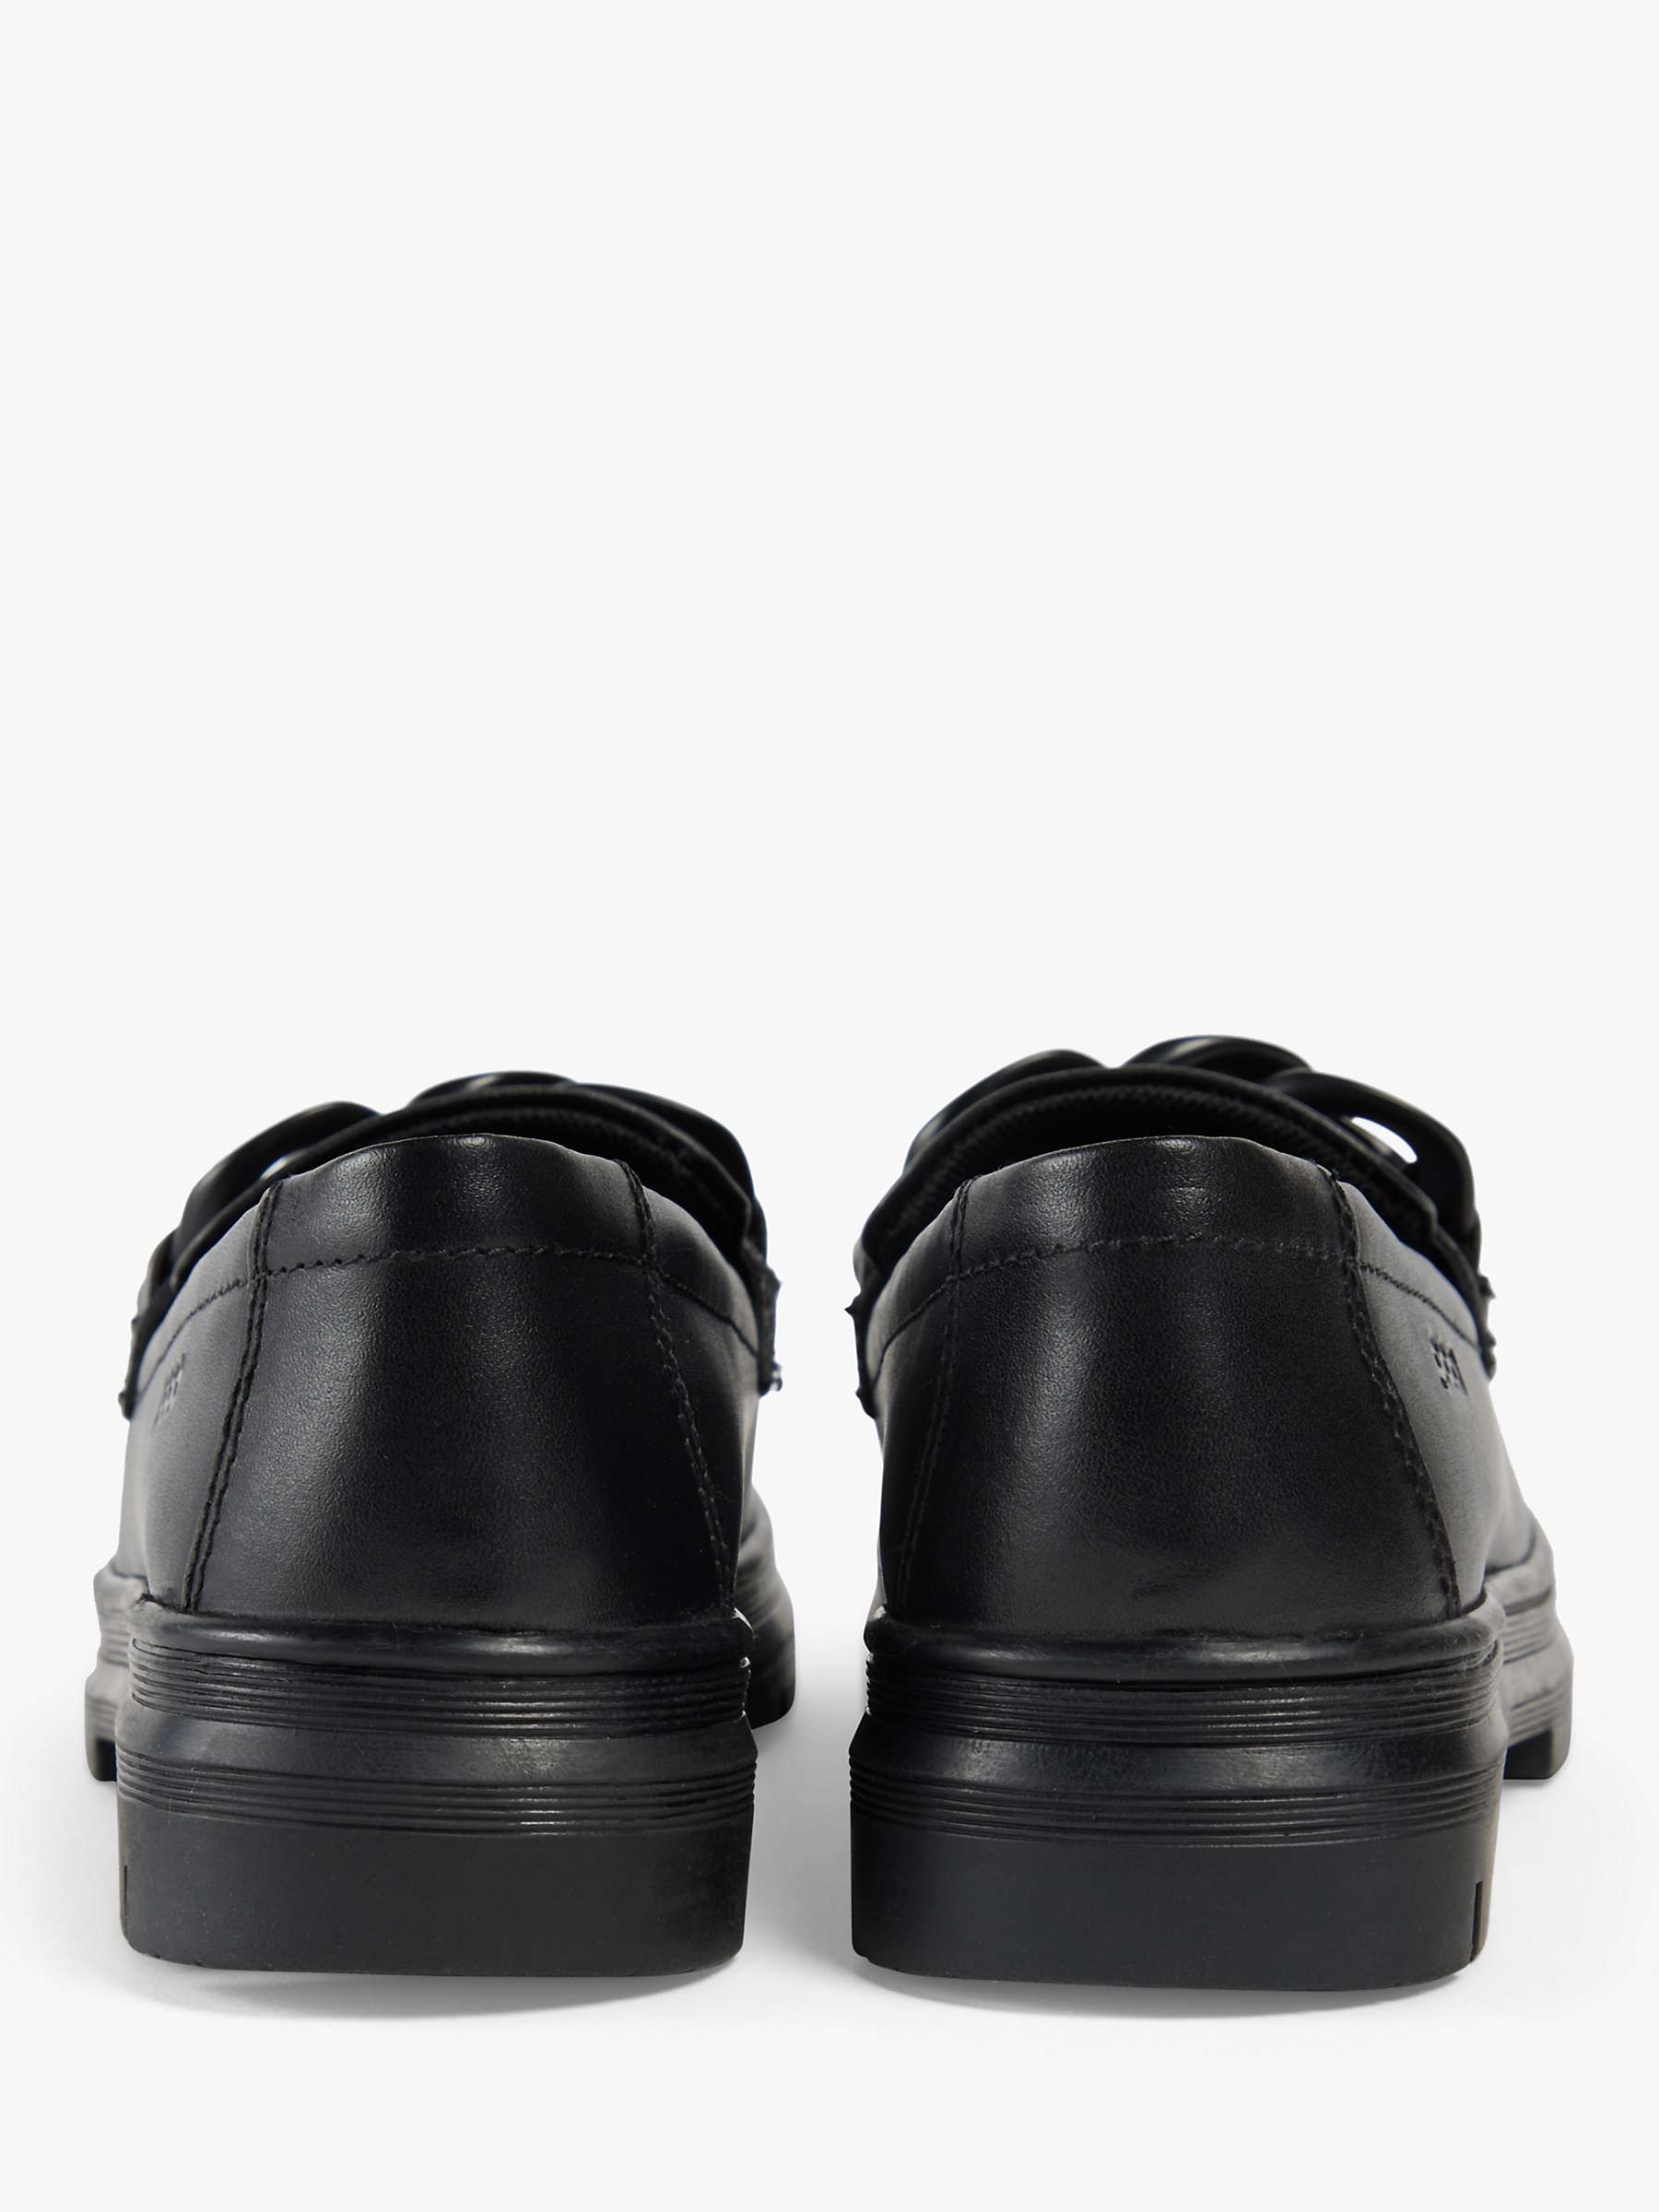 Buy Pod Kids' Mina Loafer Leather School Shoes, Black Online at johnlewis.com